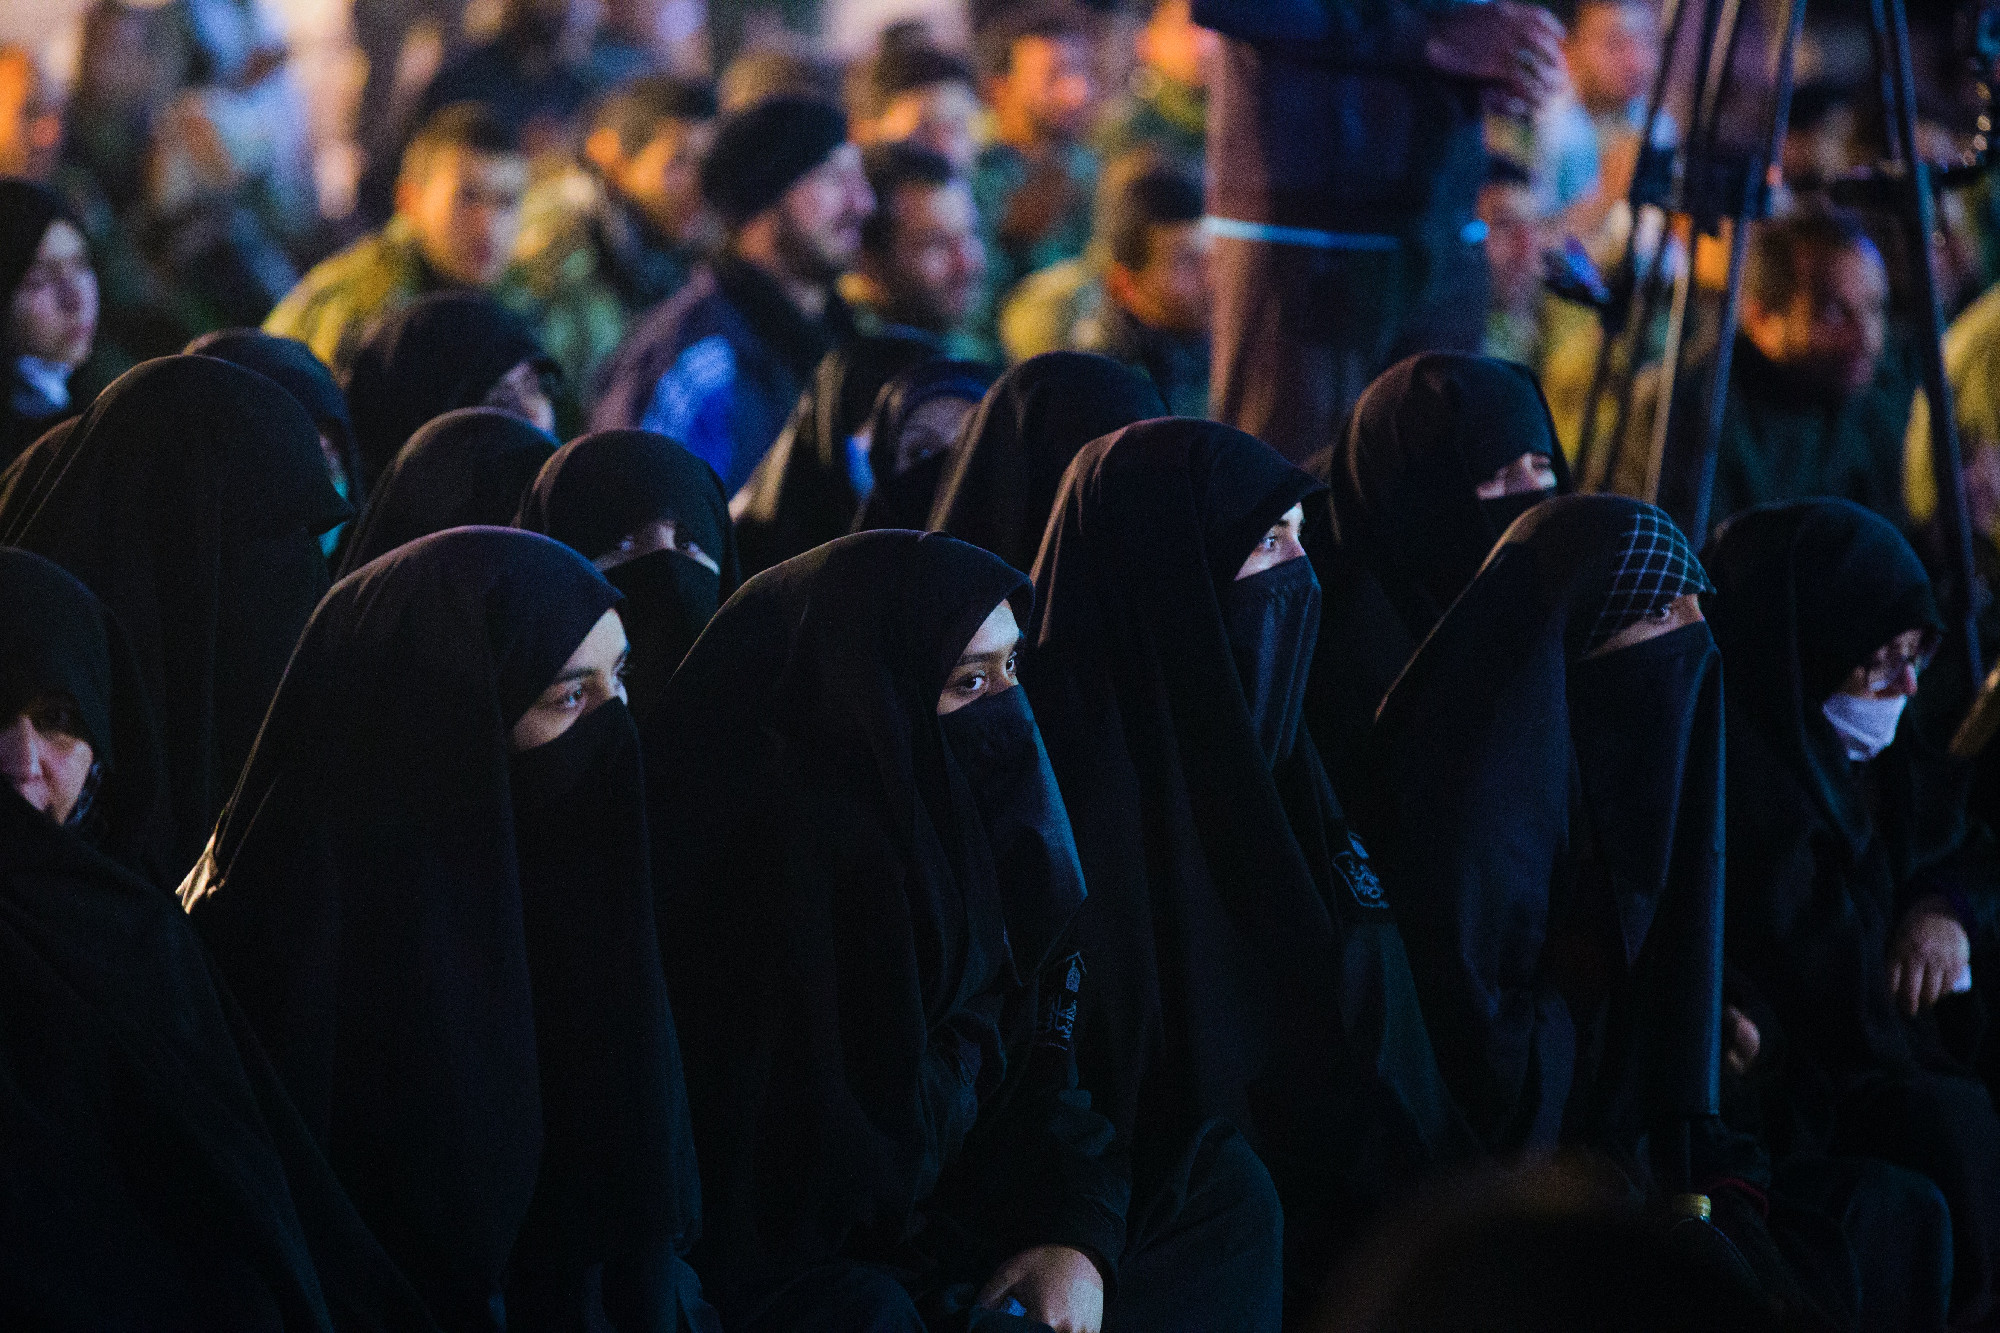 Arcfelismerő technológiával azonosítanák Iránban a hidzsábot nem viselő nőket